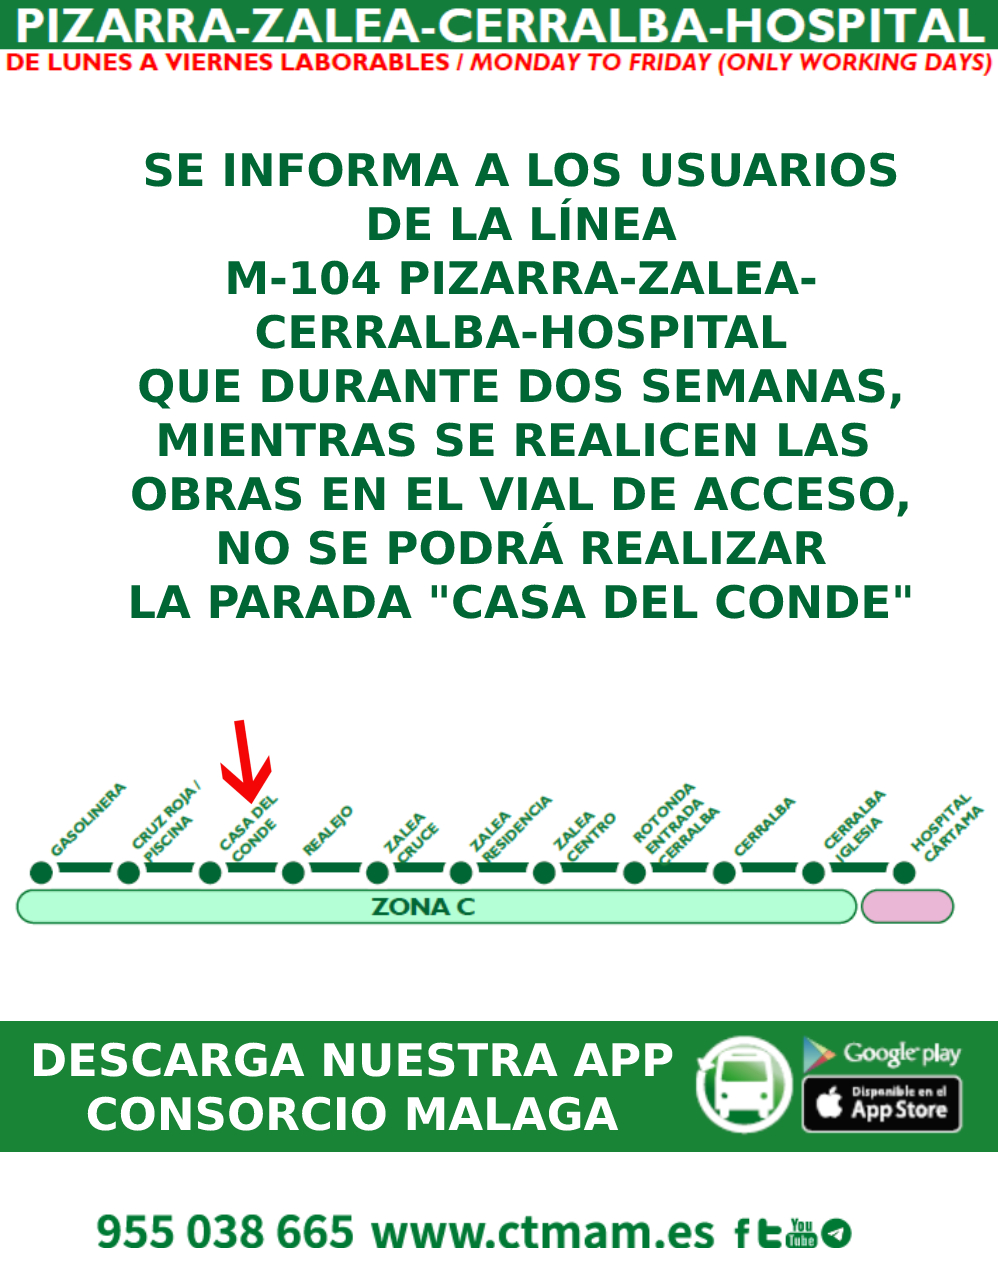 Suspensión de la parada "Casa del Conde" de la línea M-104 Pizarra-Zalea-Cerralba-Hospital